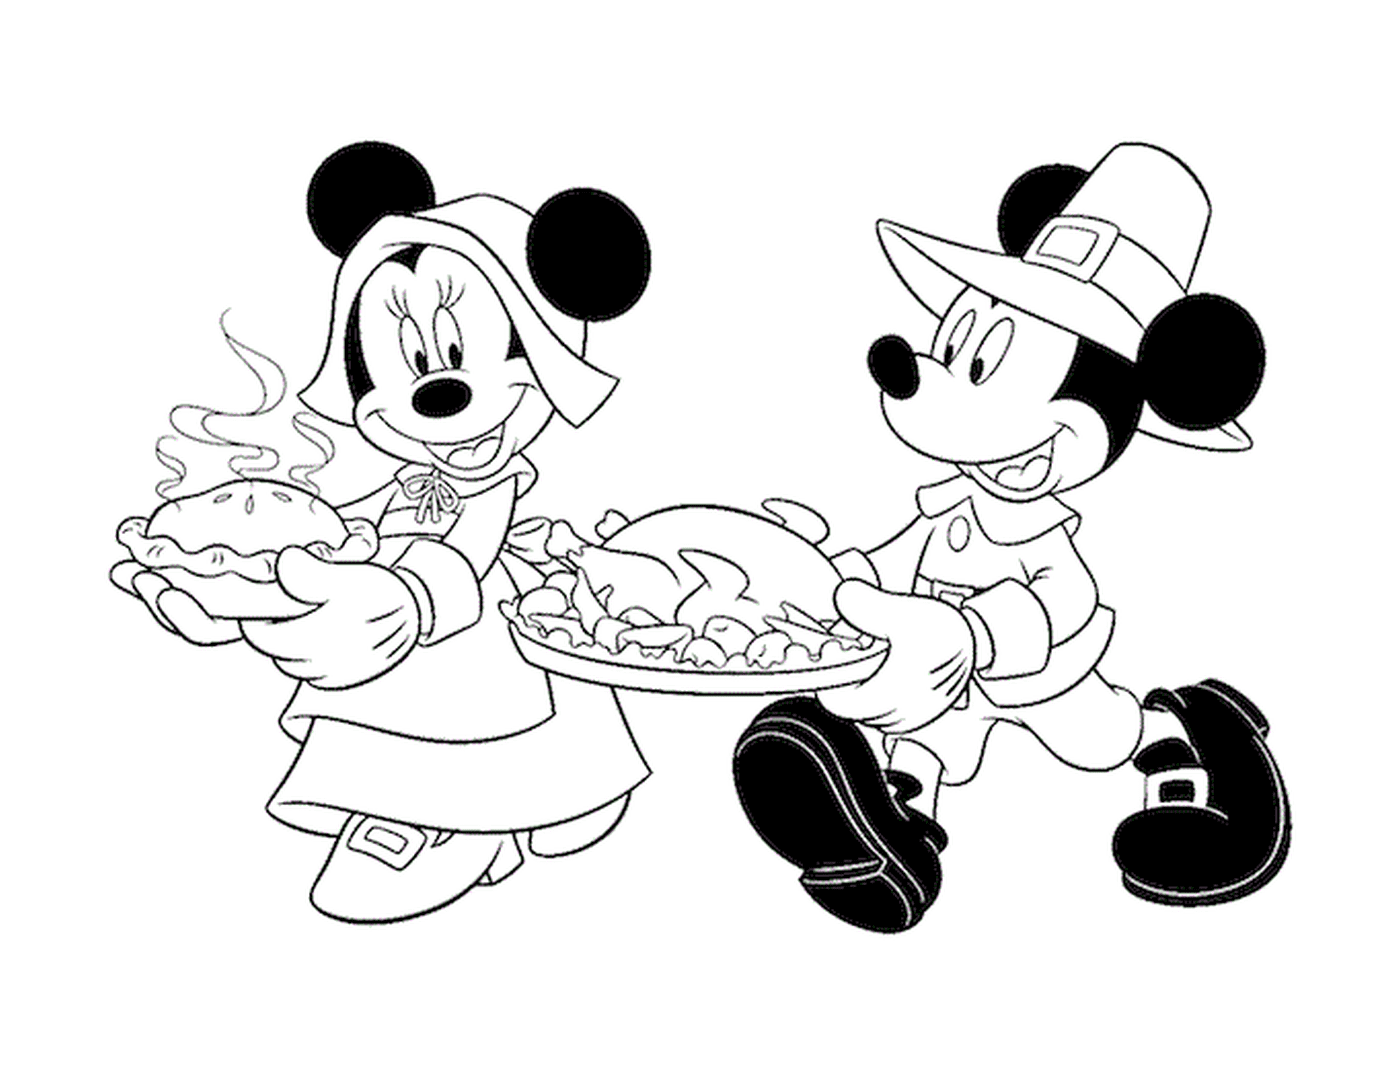  Mickey Mouse segurando uma placa de peru 